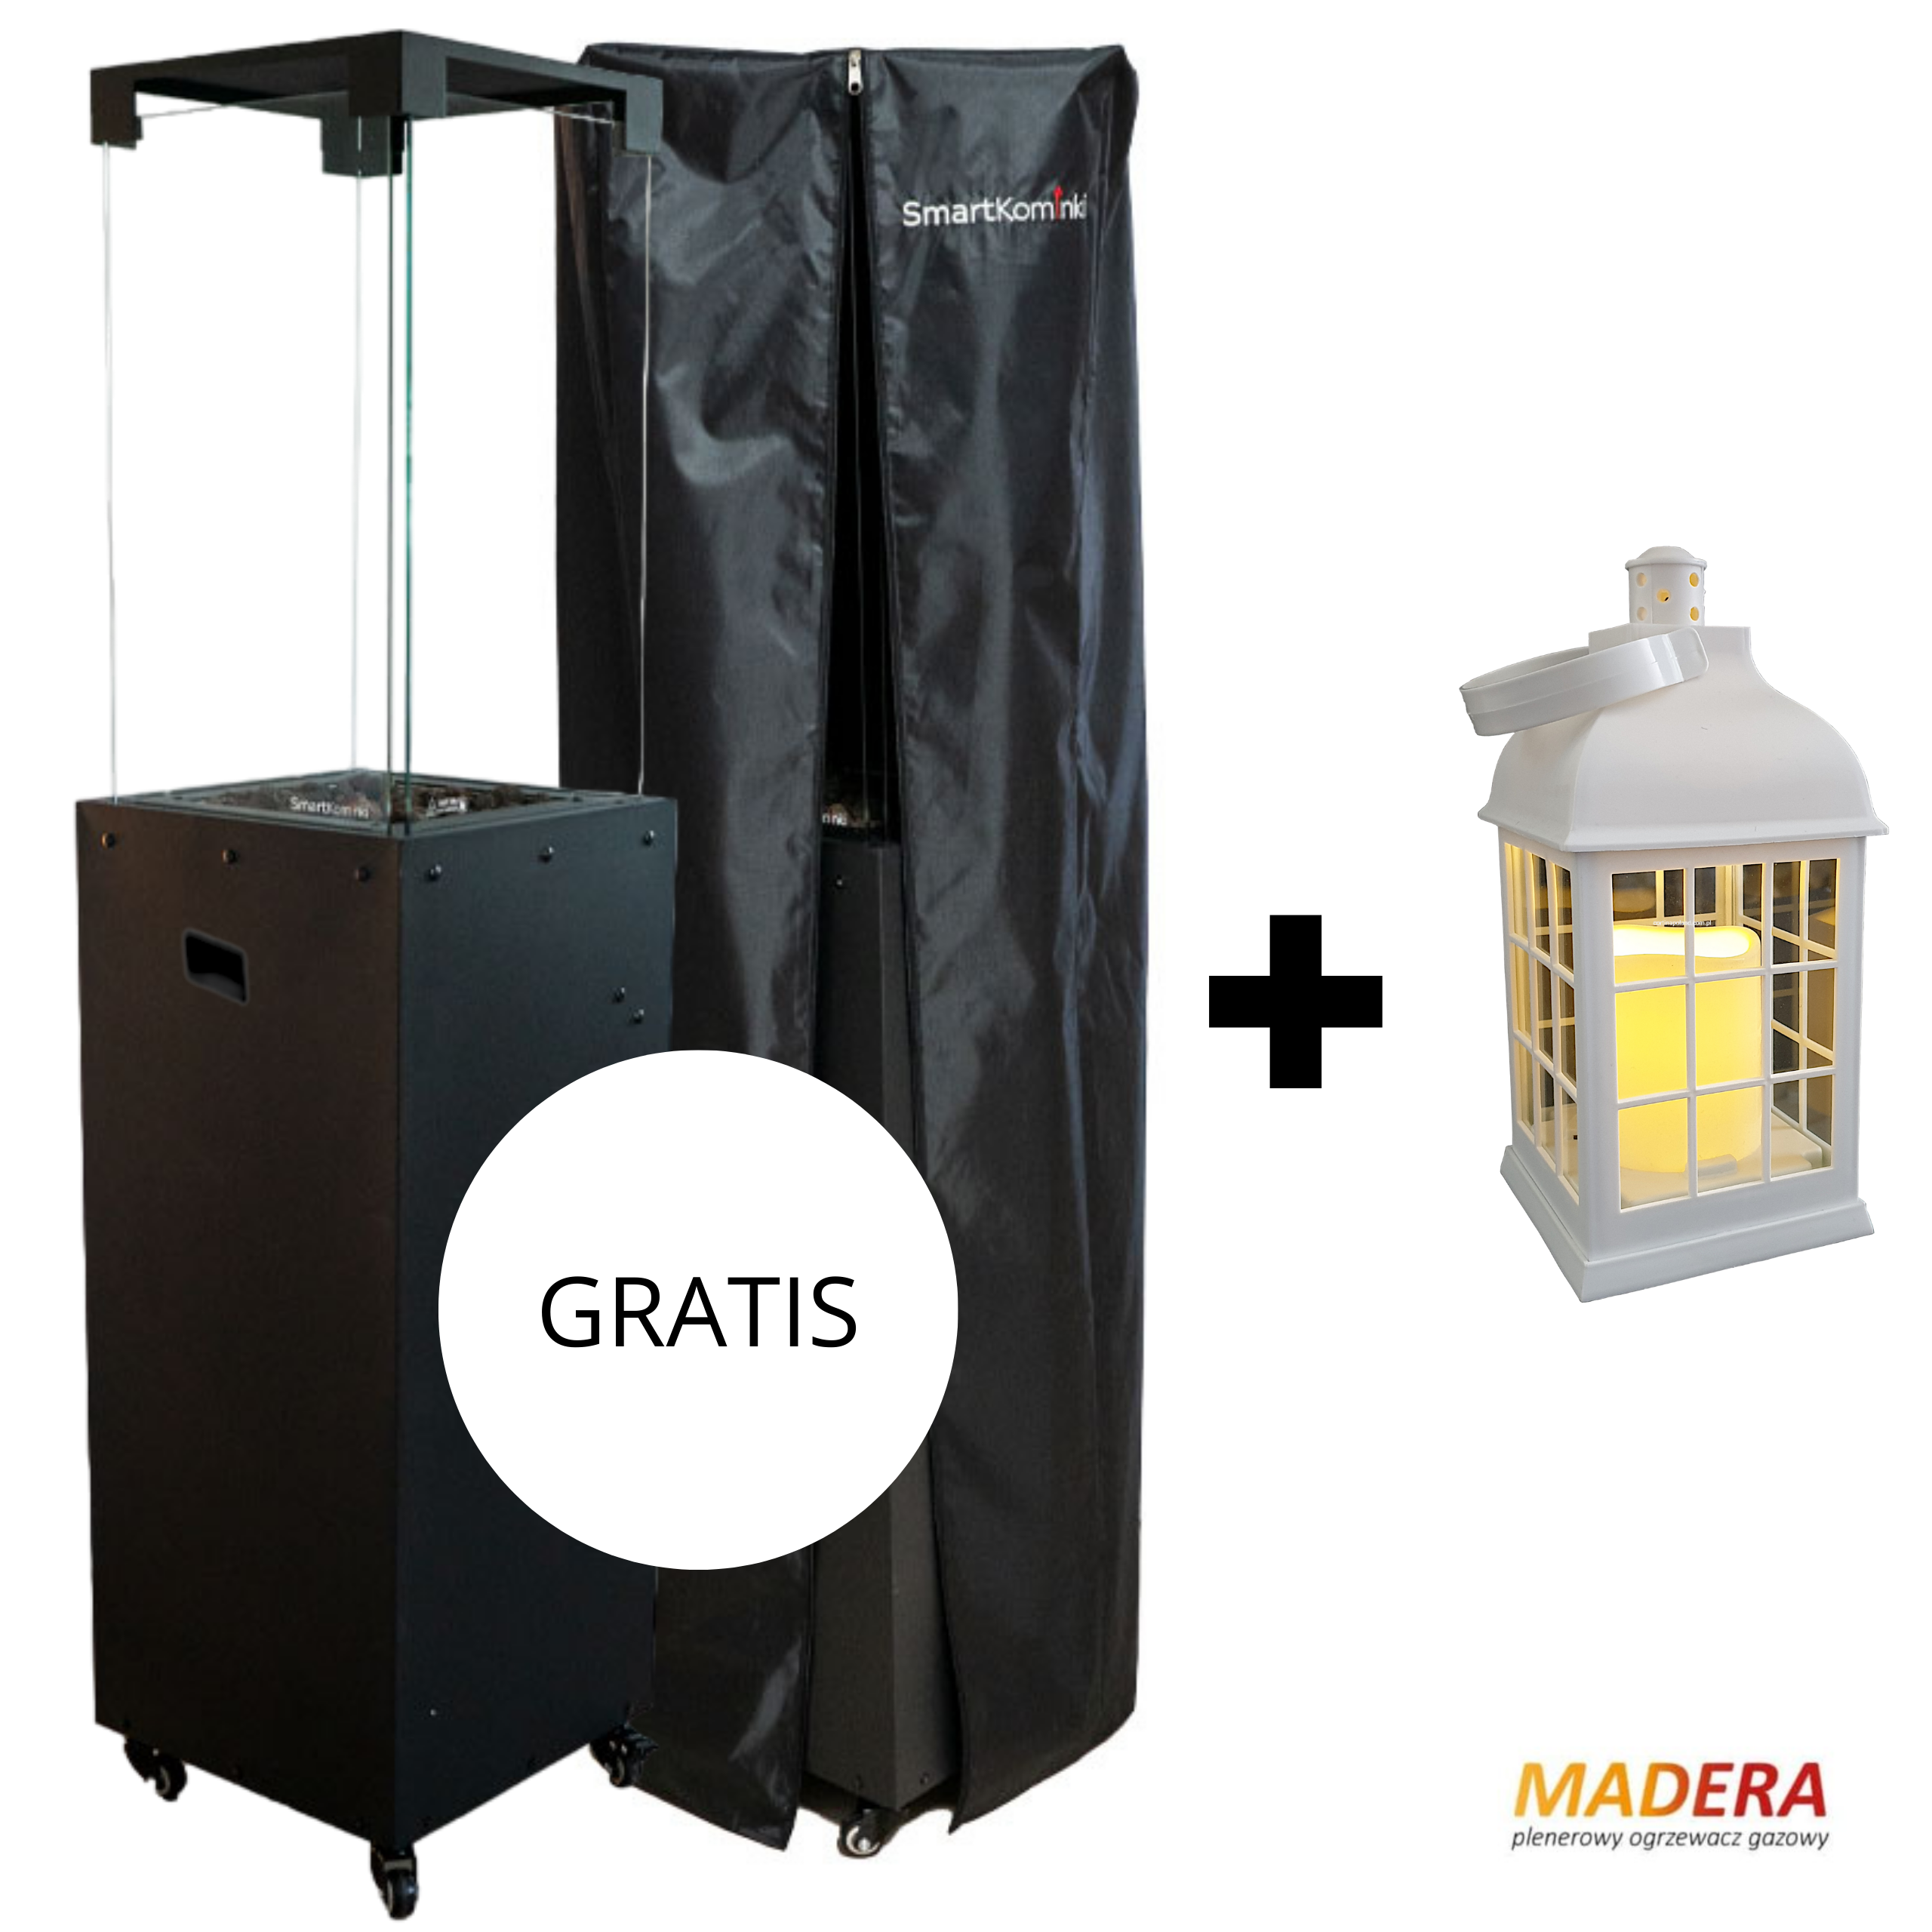 Zestaw kominek gazowy Madera z pokrowcem + gratis - wysyłka w 24h (latarenka LED)